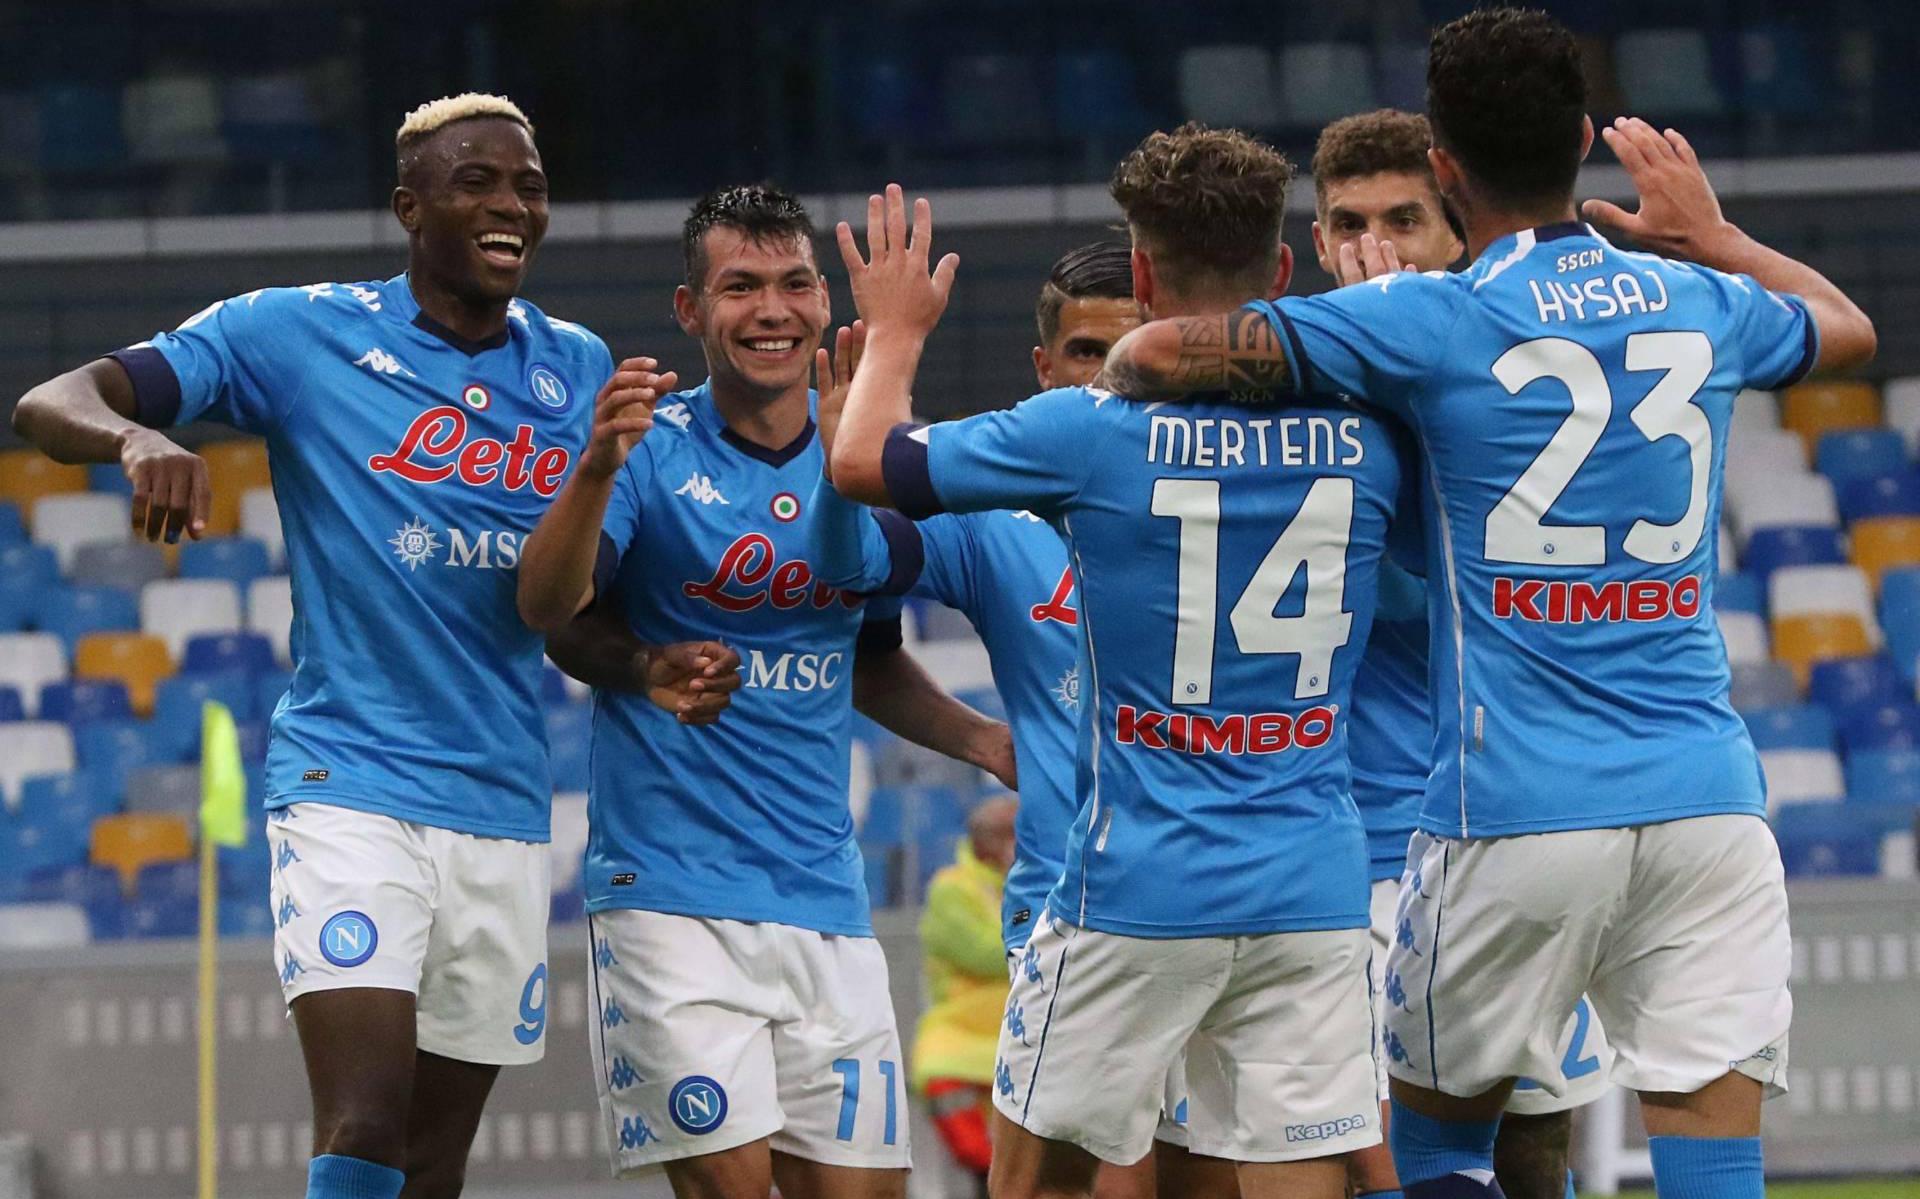 Napoli meldt zich af voor duel met Juventus, nederlaag dreigt